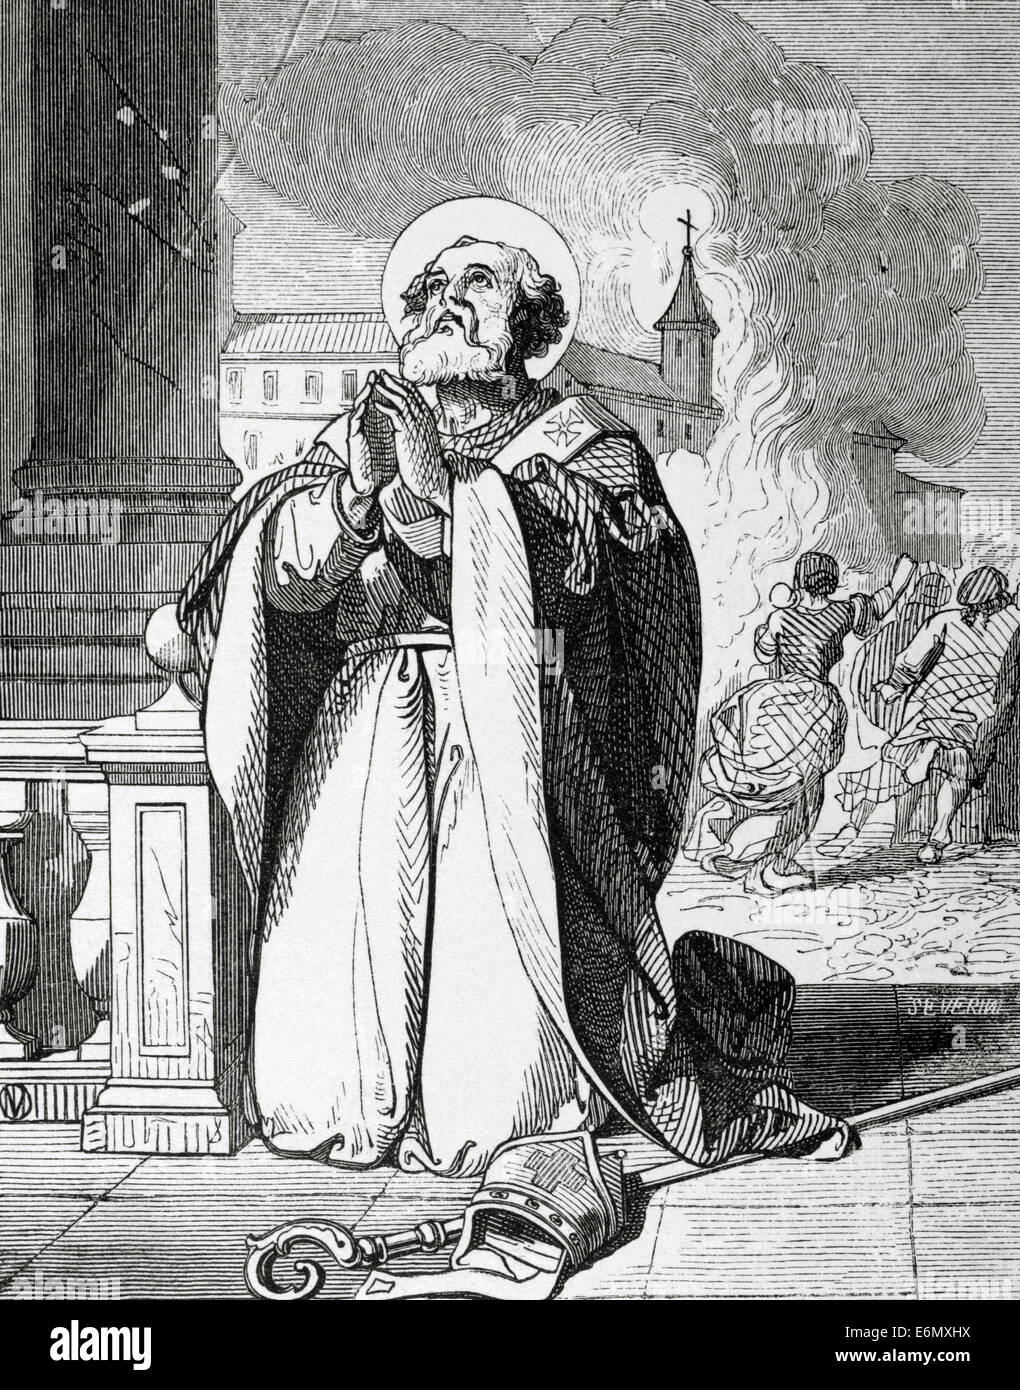 Saint Mamertus (mort C. 475). Évêque de Vienne en Gaule. Gravure de Severini. Ano Cristiano. 19e siècle. Banque D'Images